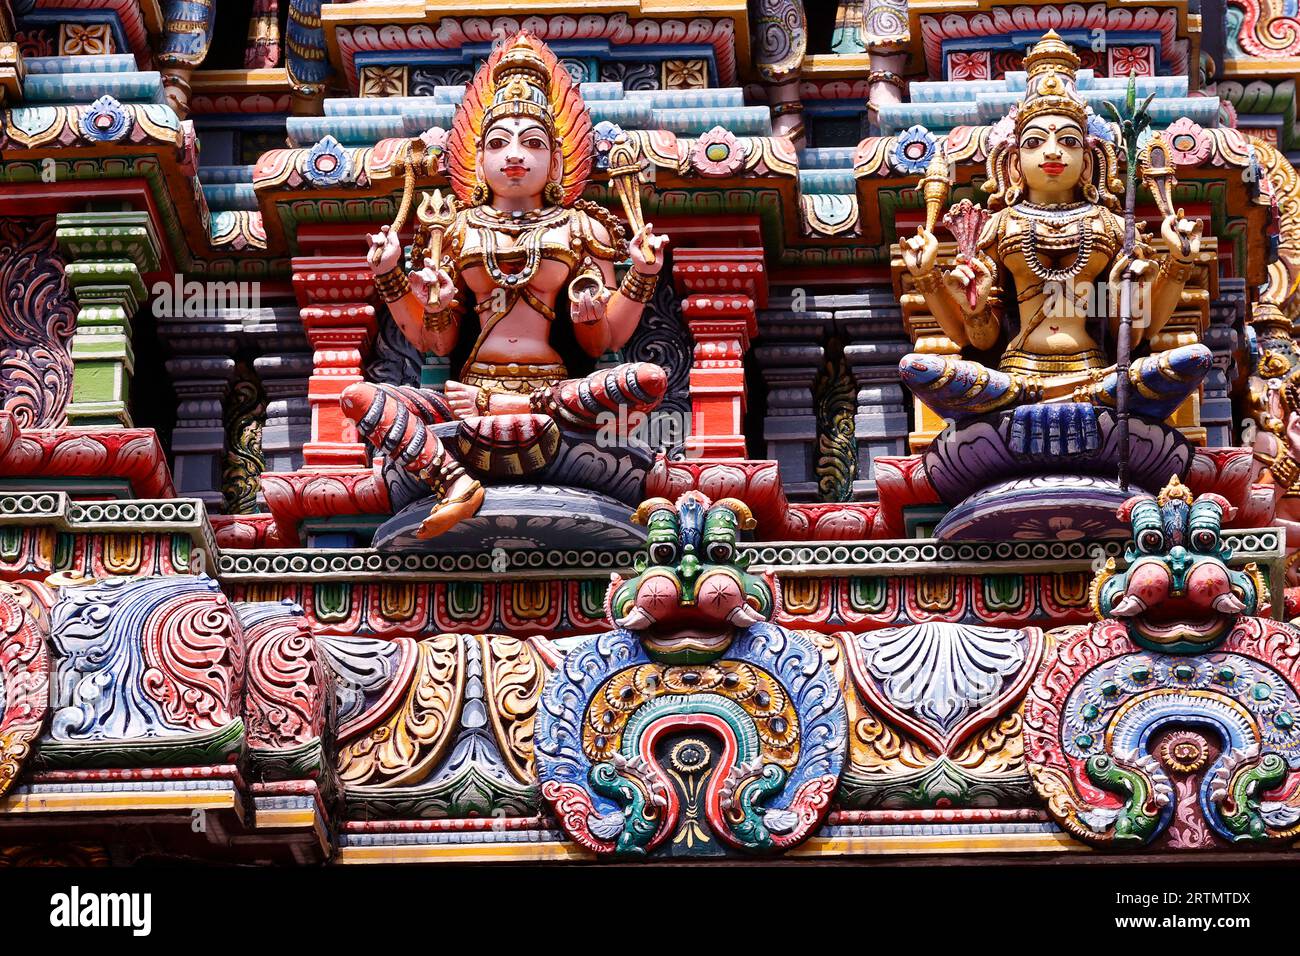 Sri Maha Mariamman Tempel an der Silom Road. Gopuram mit hinduistischen Gottheiten. Bangkok. Thailand. Stockfoto